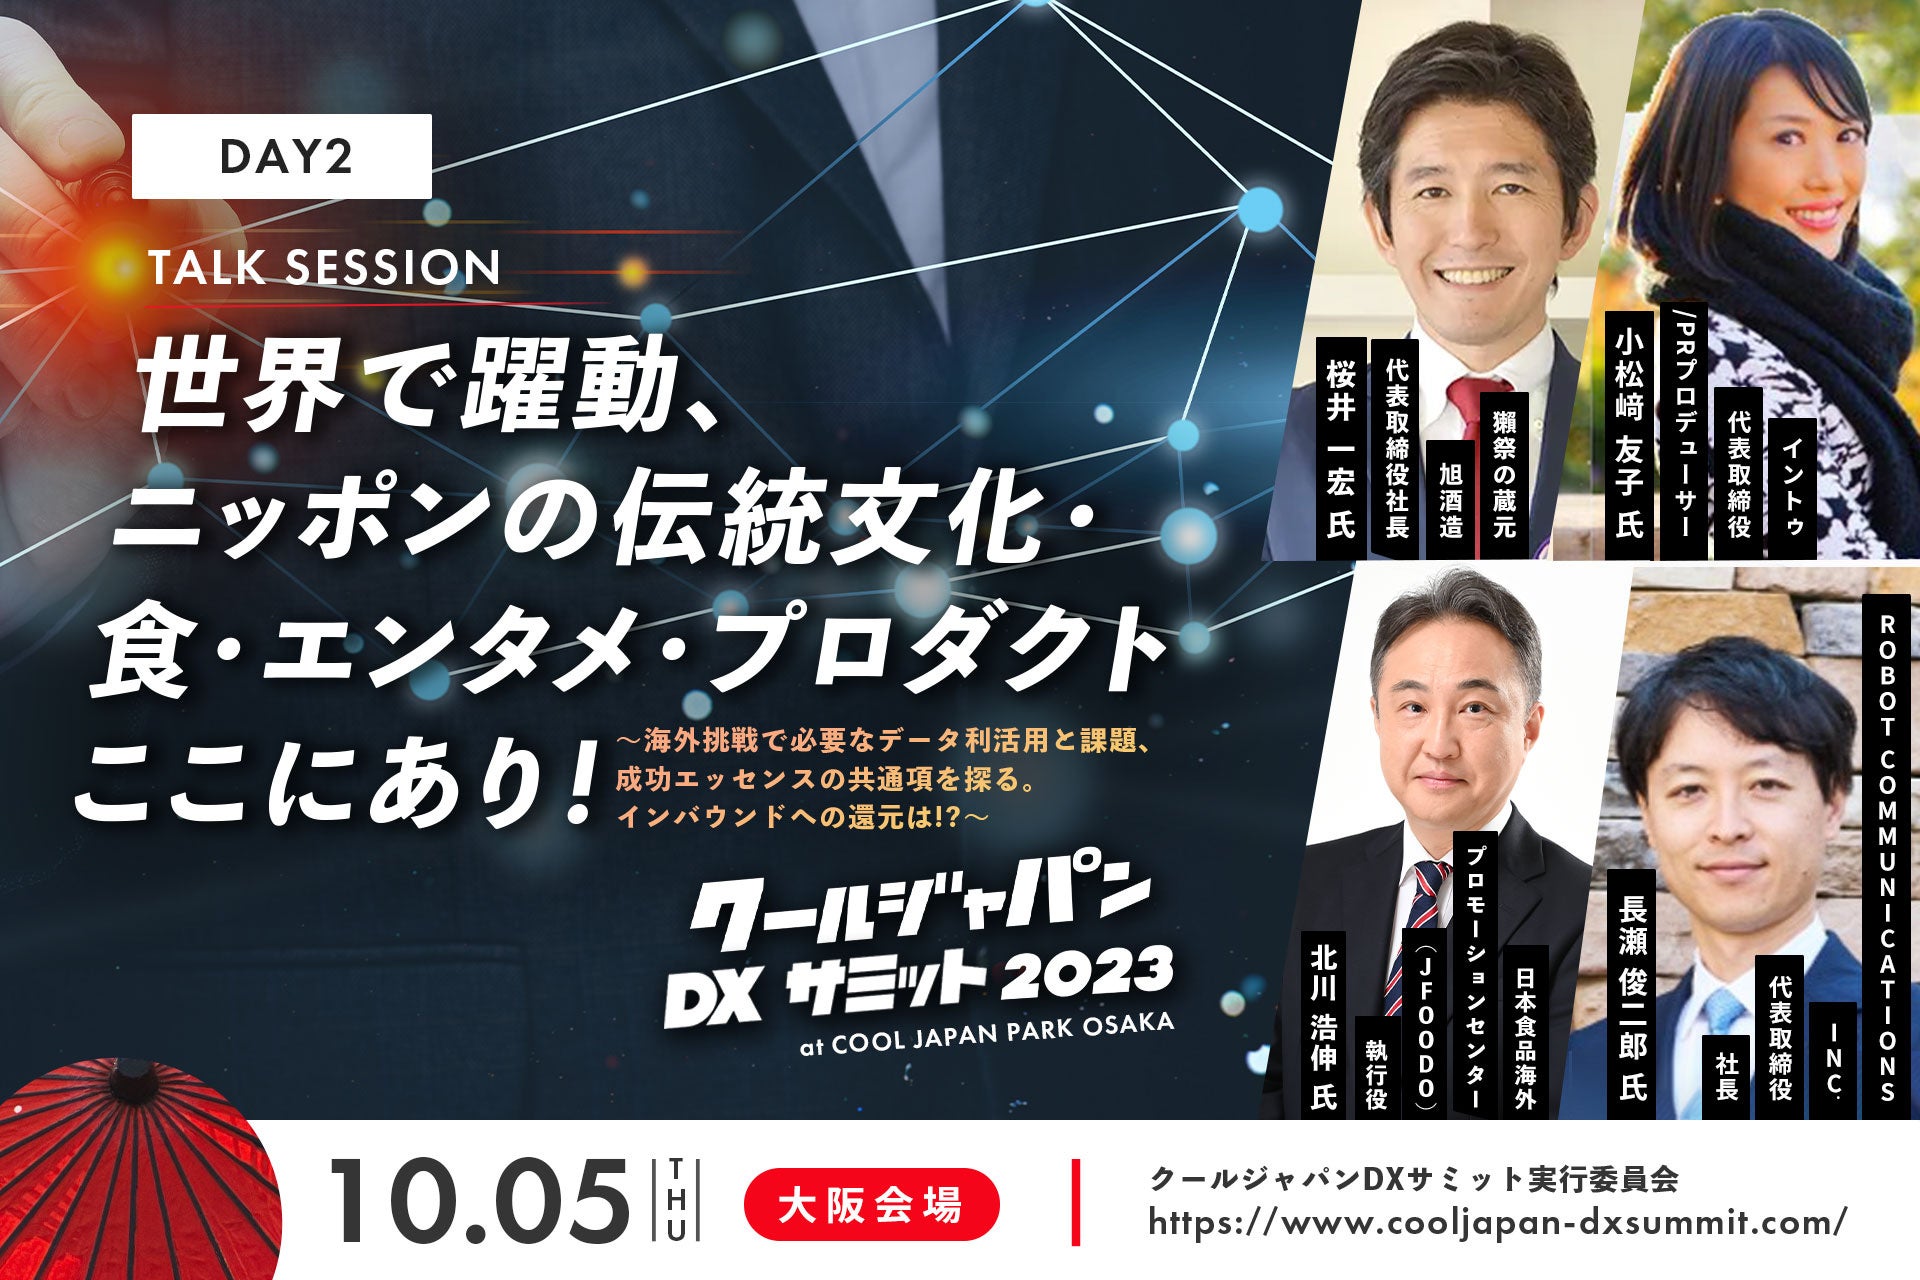 「クールジャパンDXサミット 2023」大阪会場 Day2 03 Talk Session 登壇者を発表！